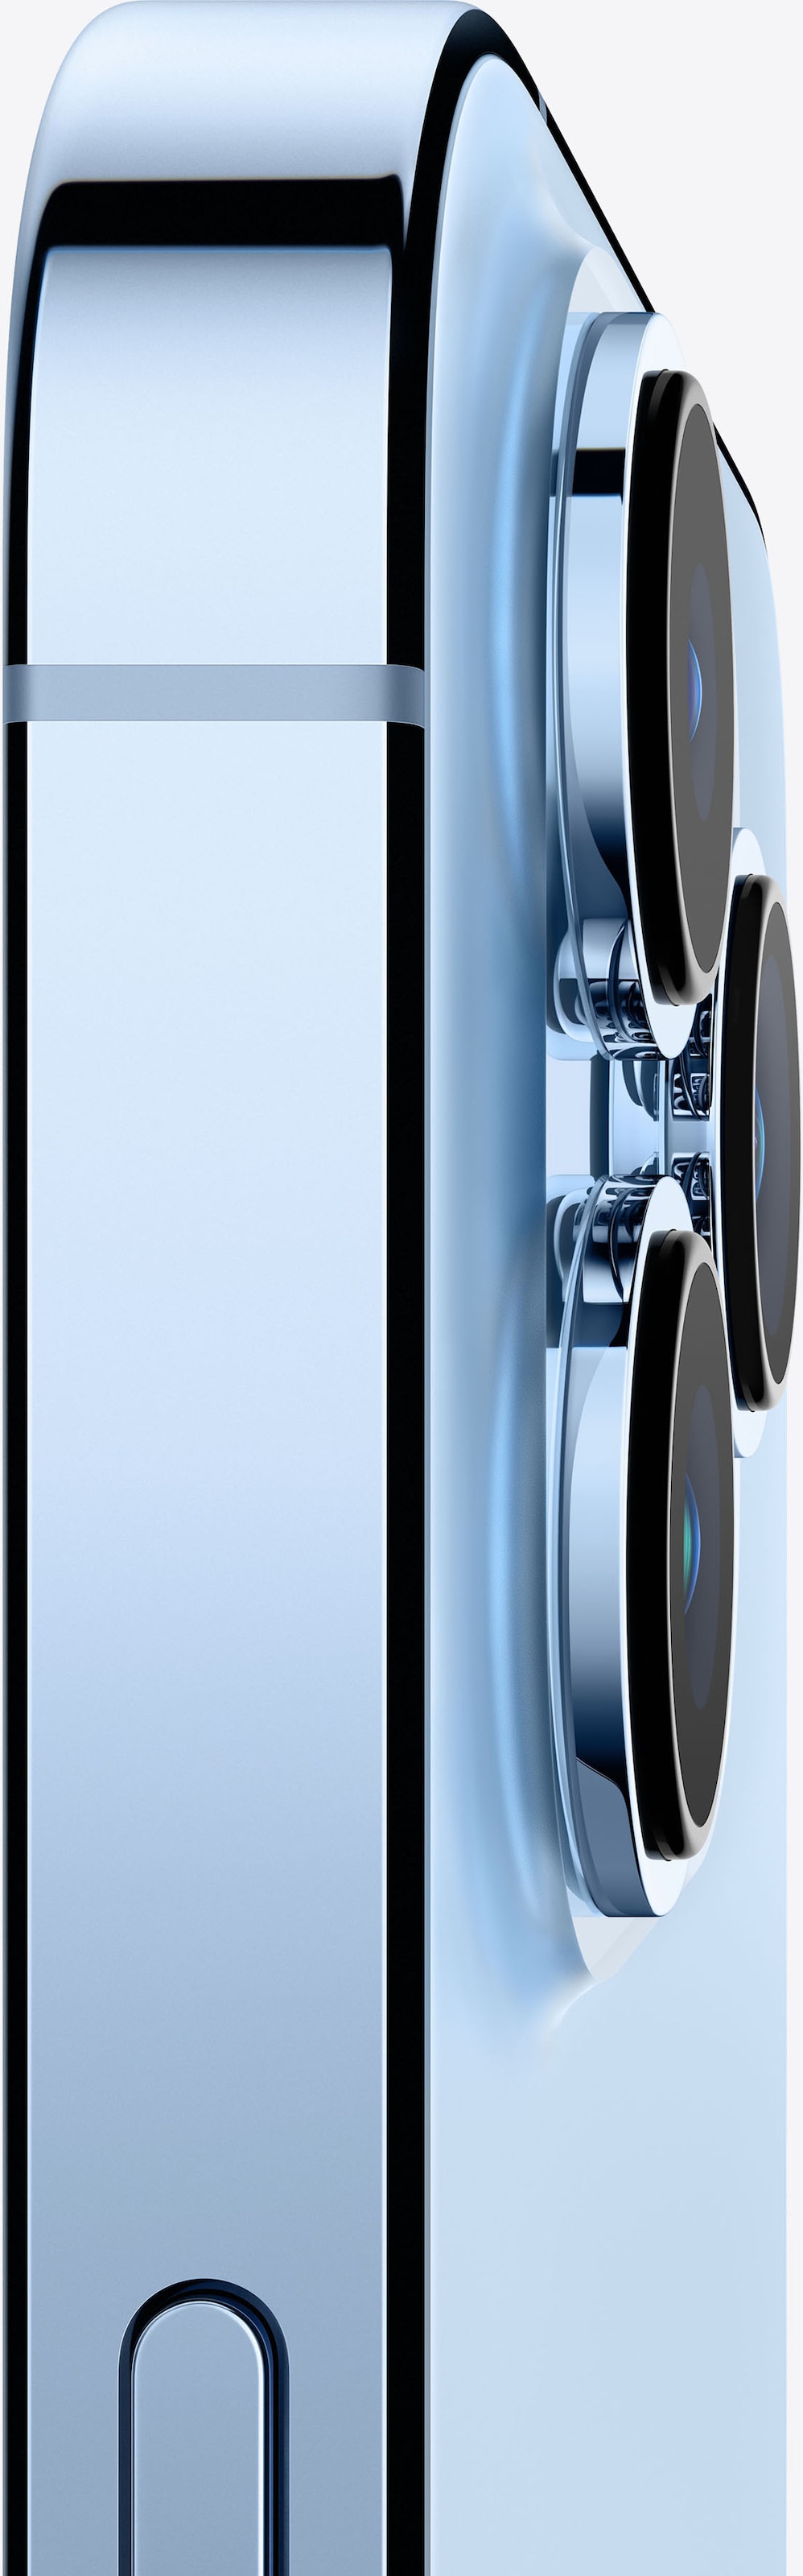 Apple Smartphone »iPhone 13 Pro Max«, Silver, 17 cm/6,7 Zoll, 256 GB  Speicherplatz, 12 MP Kamera online bestellen